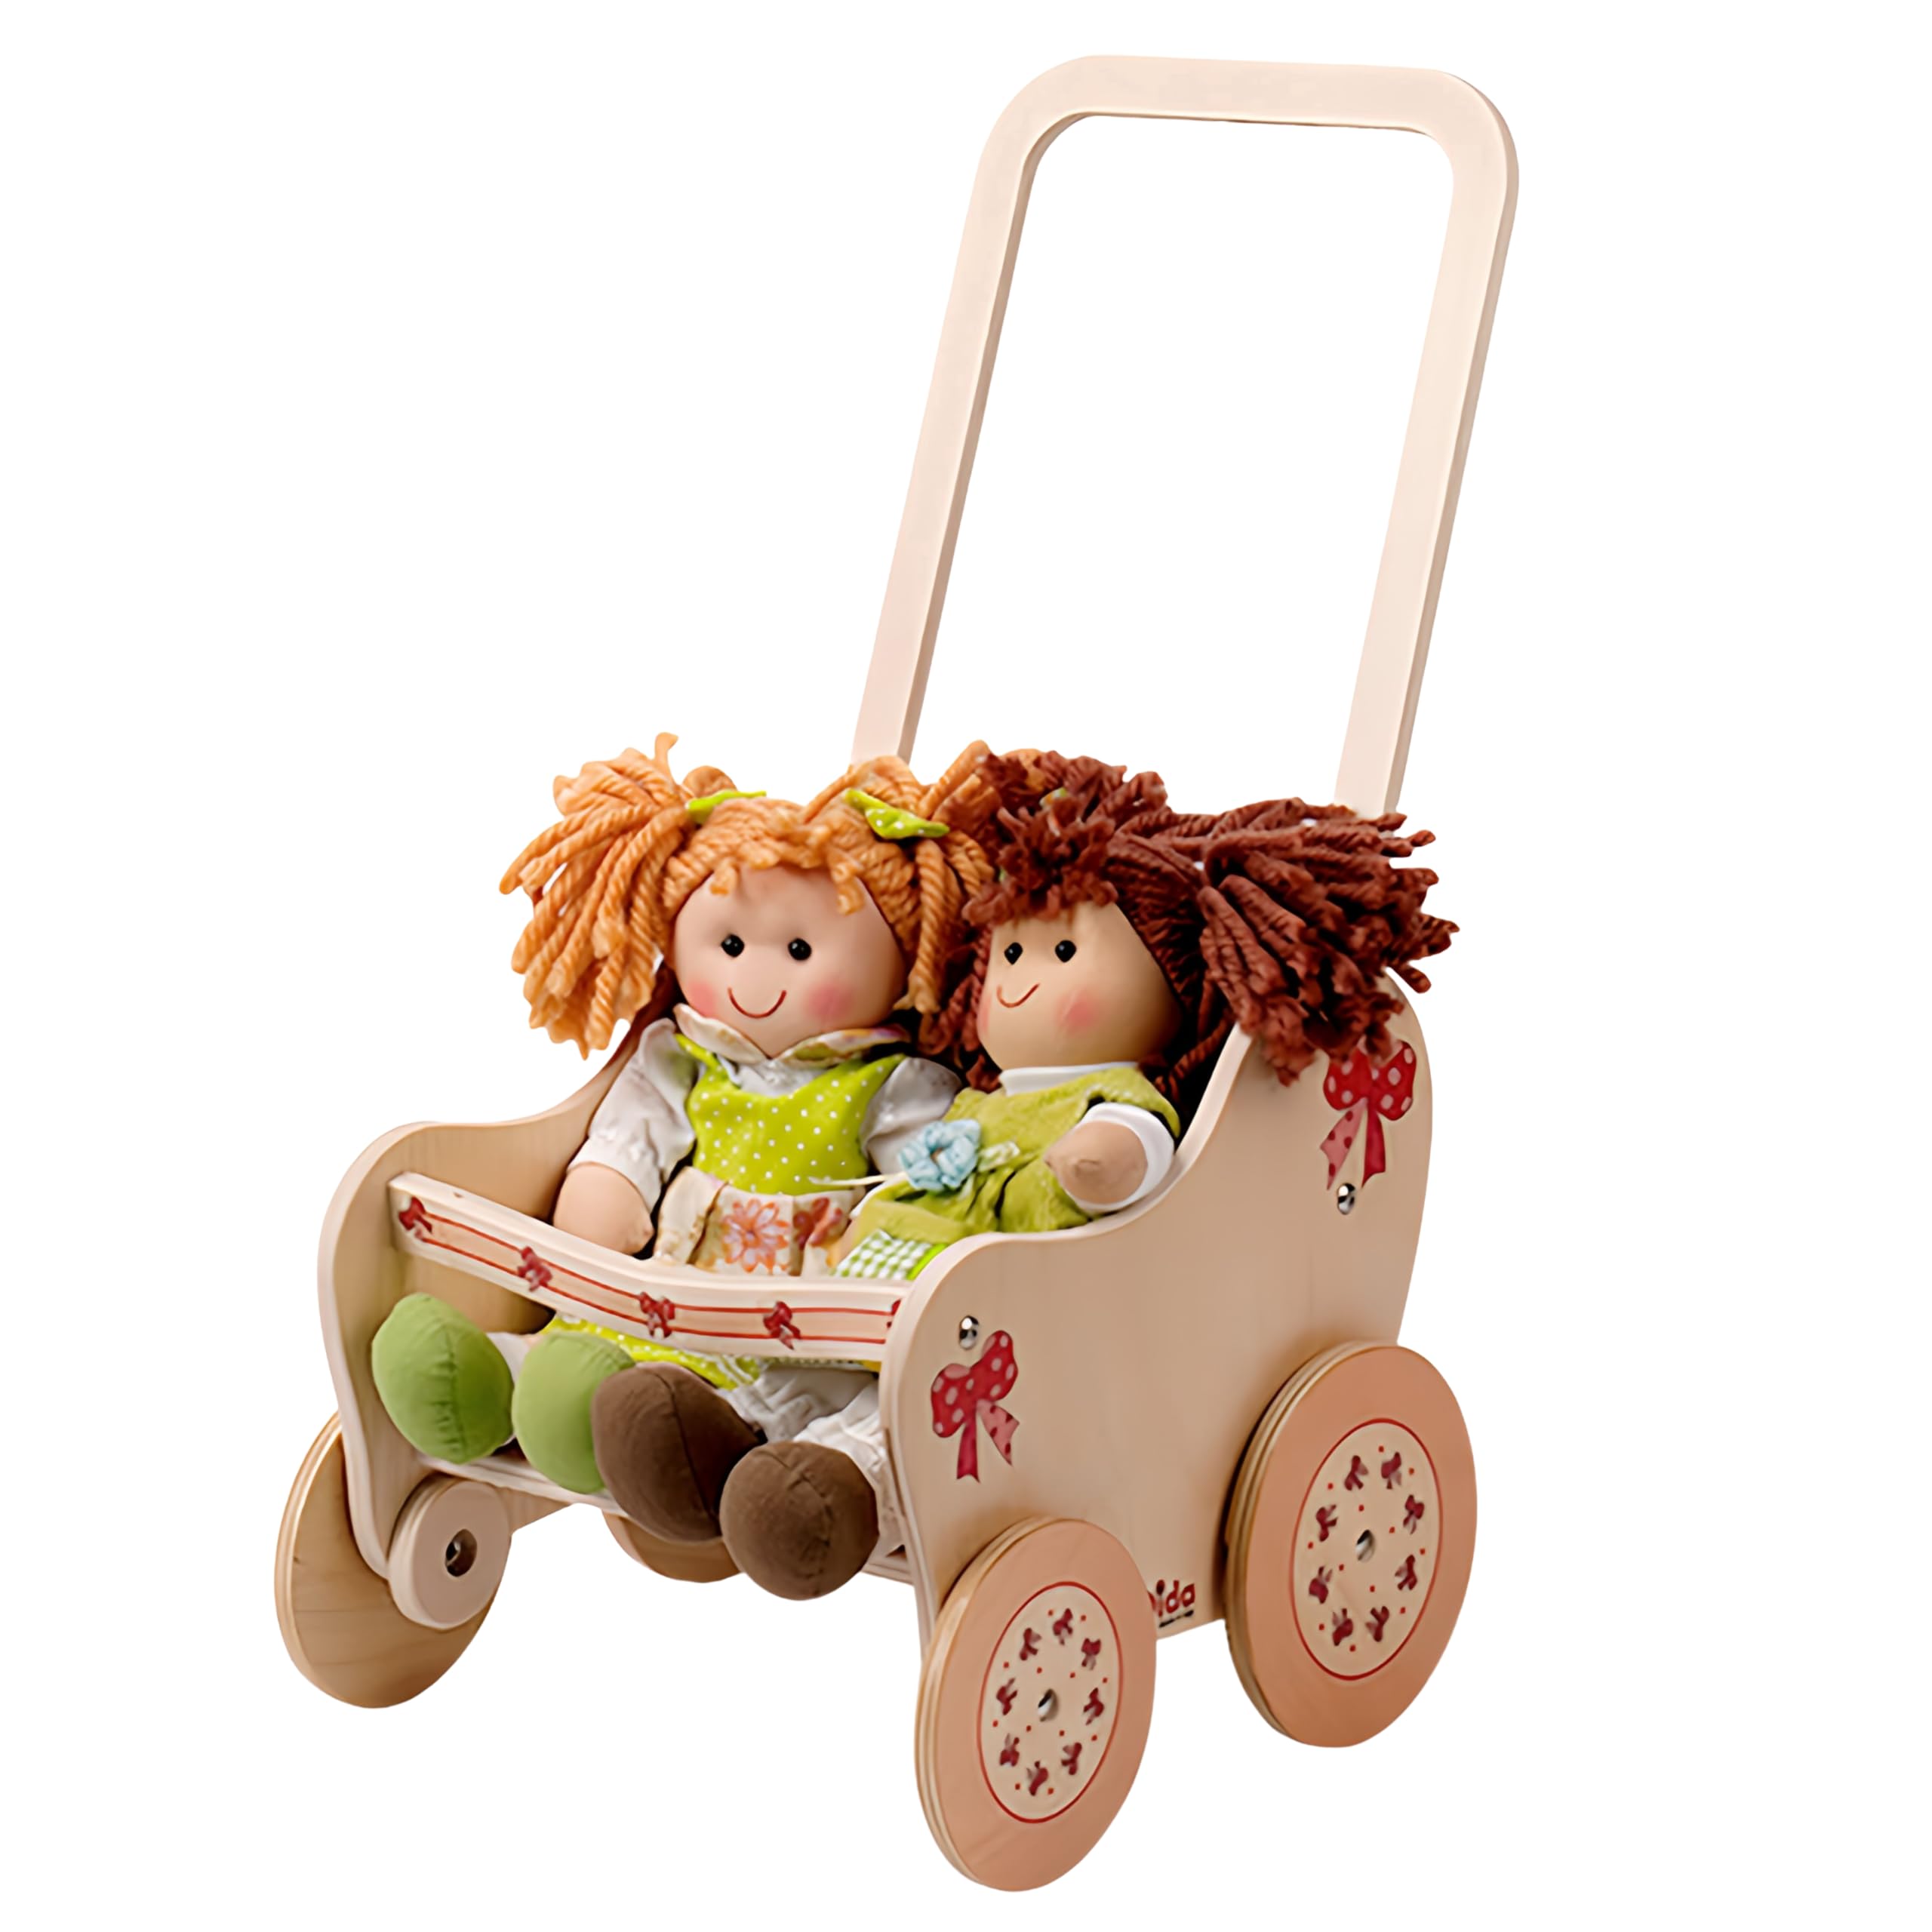 Dida - Der Puppenbuggy Aus Holz Dekoration Schleife Ist EIN Holzpuppenwagen Für Kleinkinder Nützlich Auch Als Lauflern Wagen